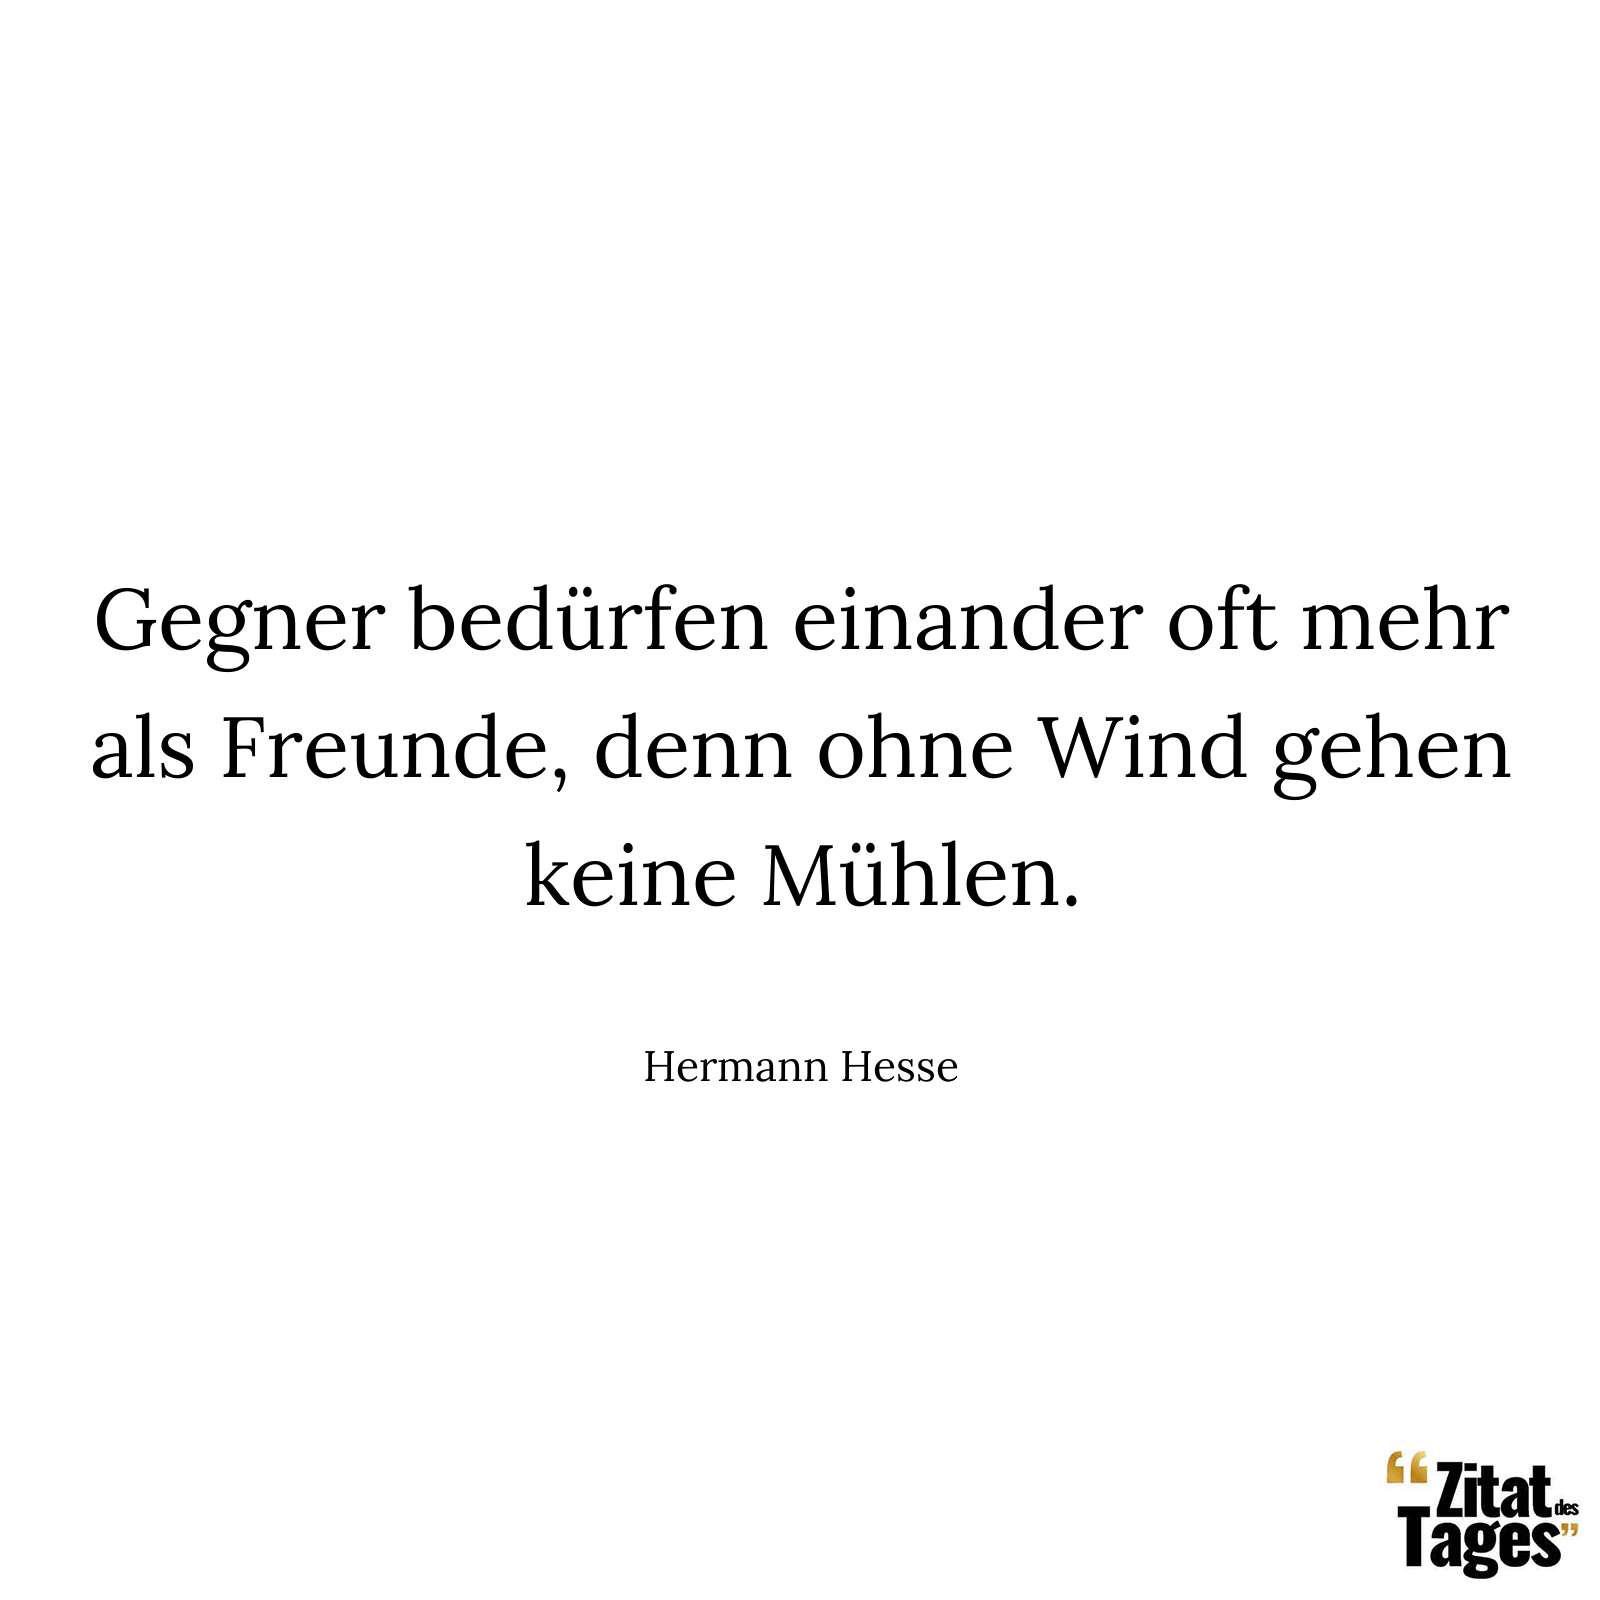 Gegner bedürfen einander oft mehr als Freunde, denn ohne Wind gehen keine Mühlen. - Hermann Hesse